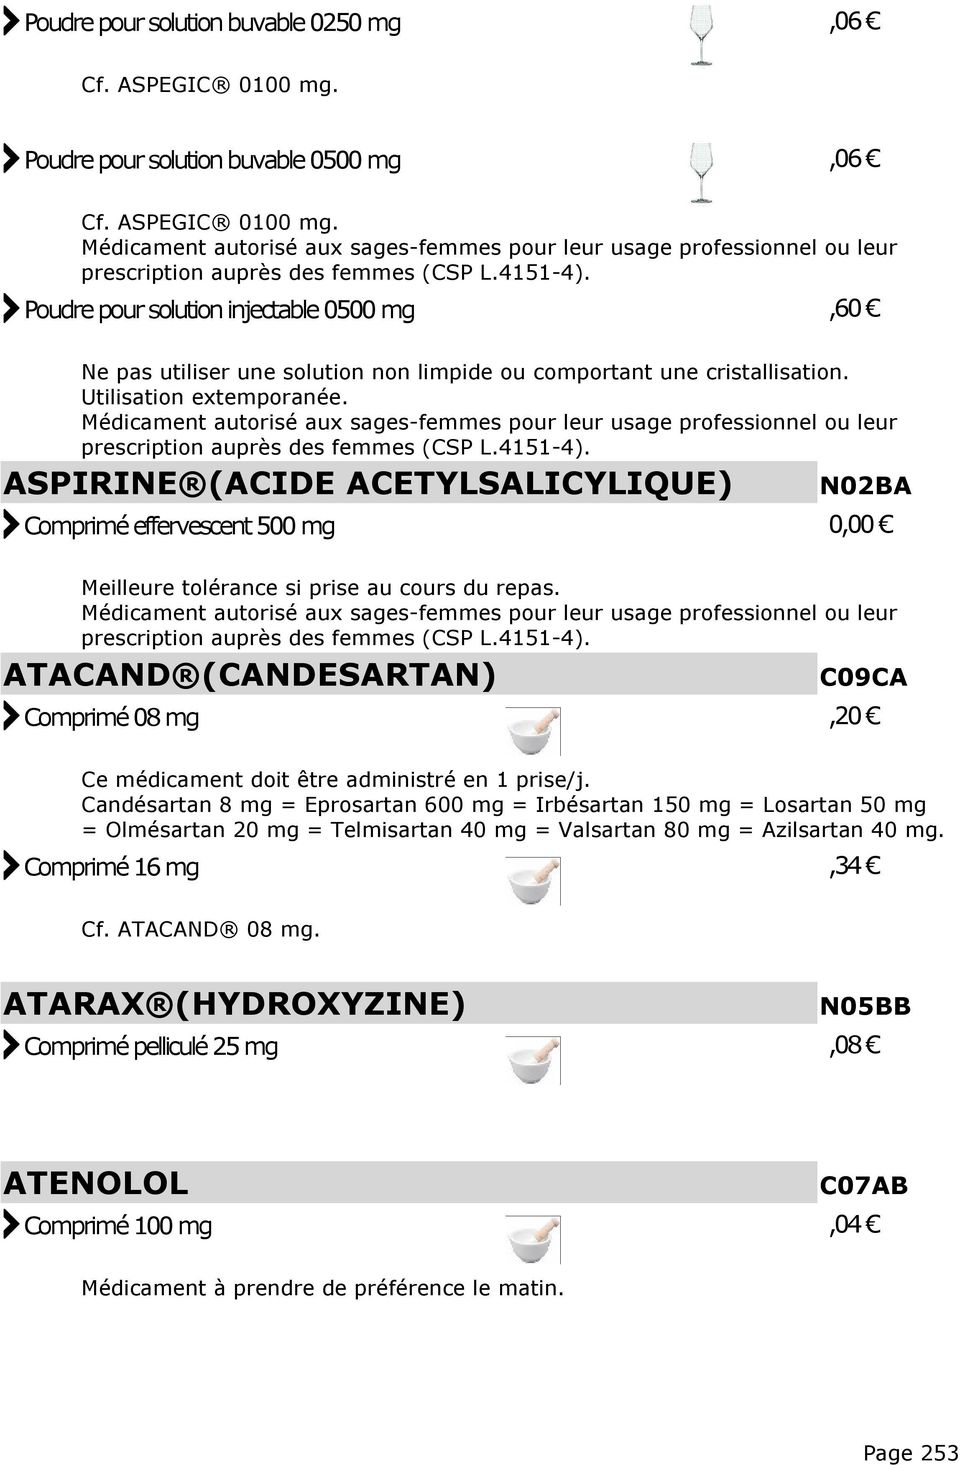 ATACAND (CANDESARTAN) C09CA Comprimé 08 mg,20 Ce médicament doit être administré en 1 prise/j.